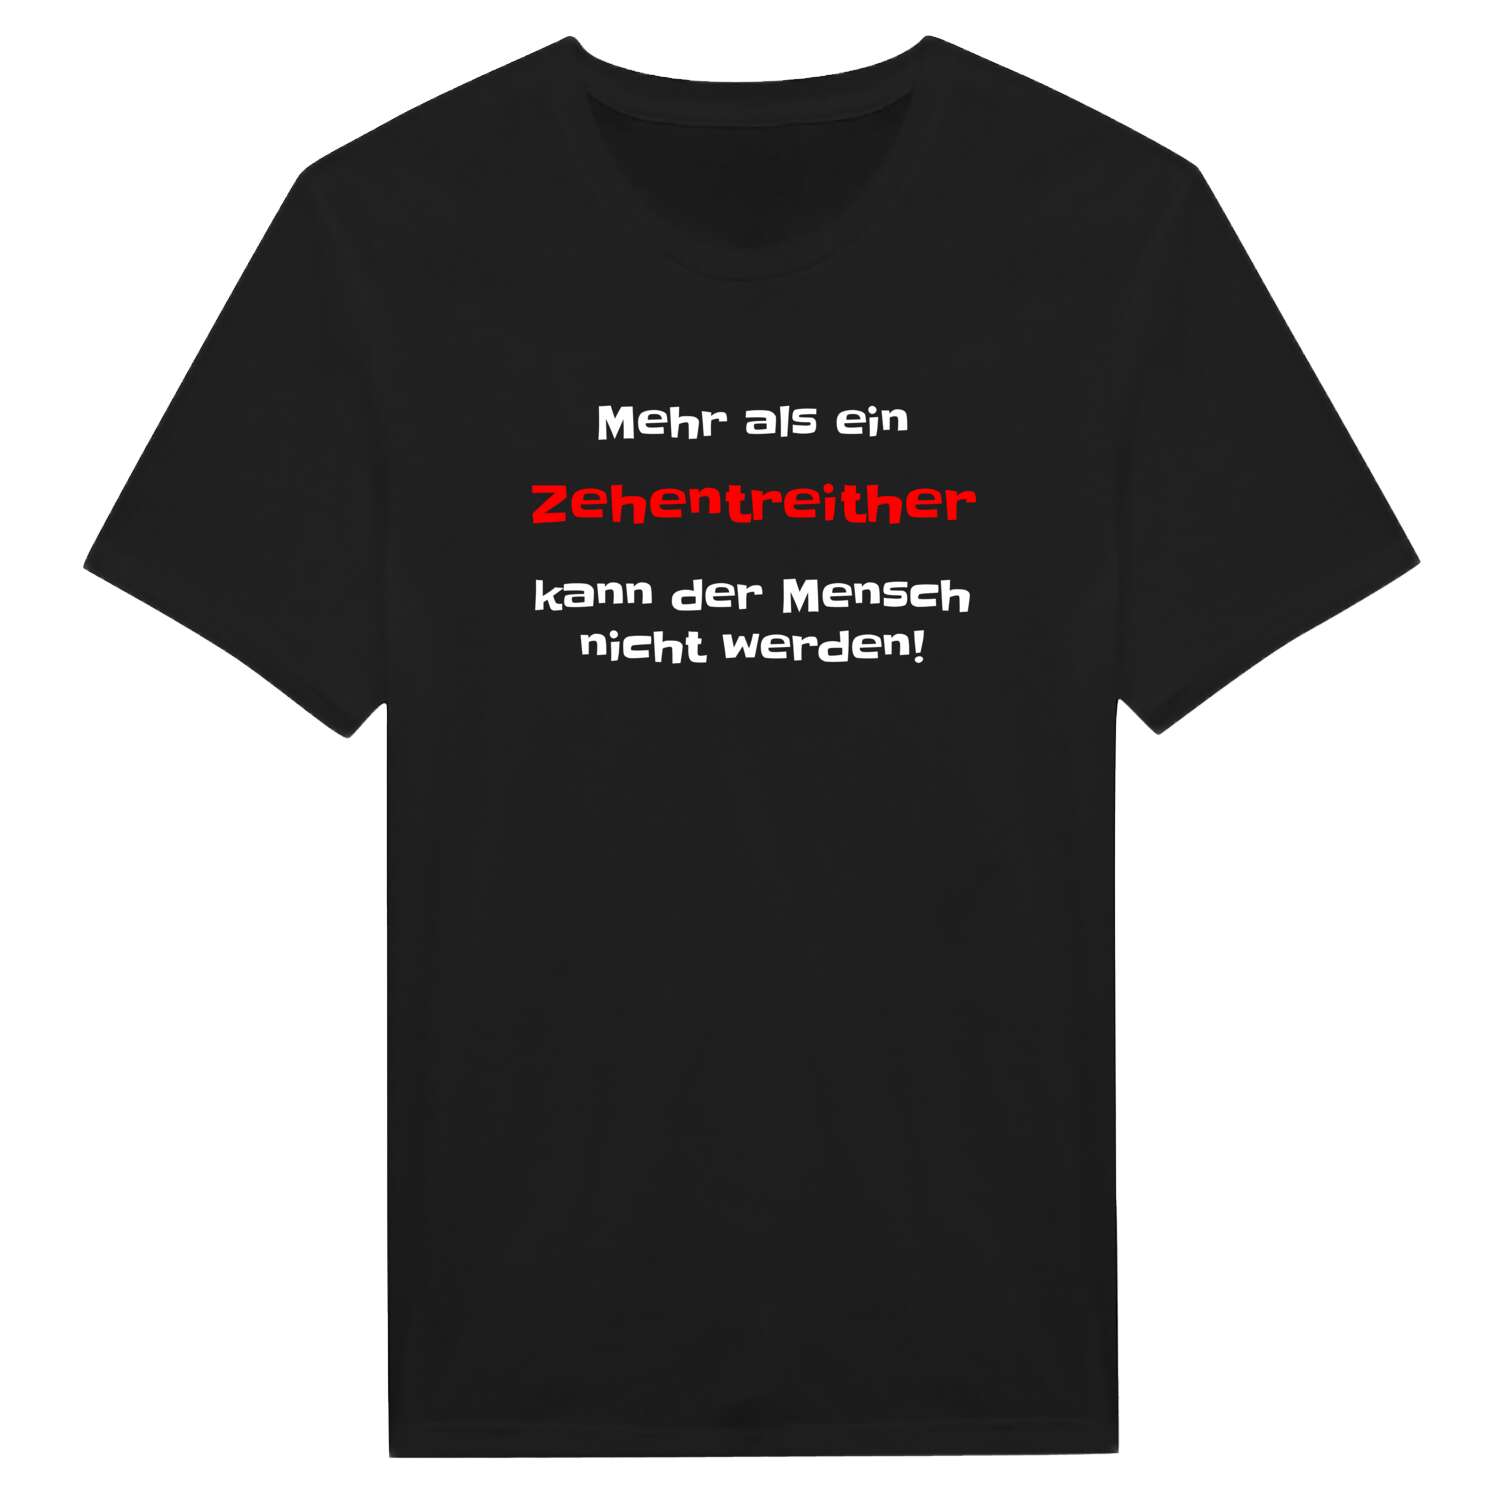 Zehentreith T-Shirt »Mehr als ein«